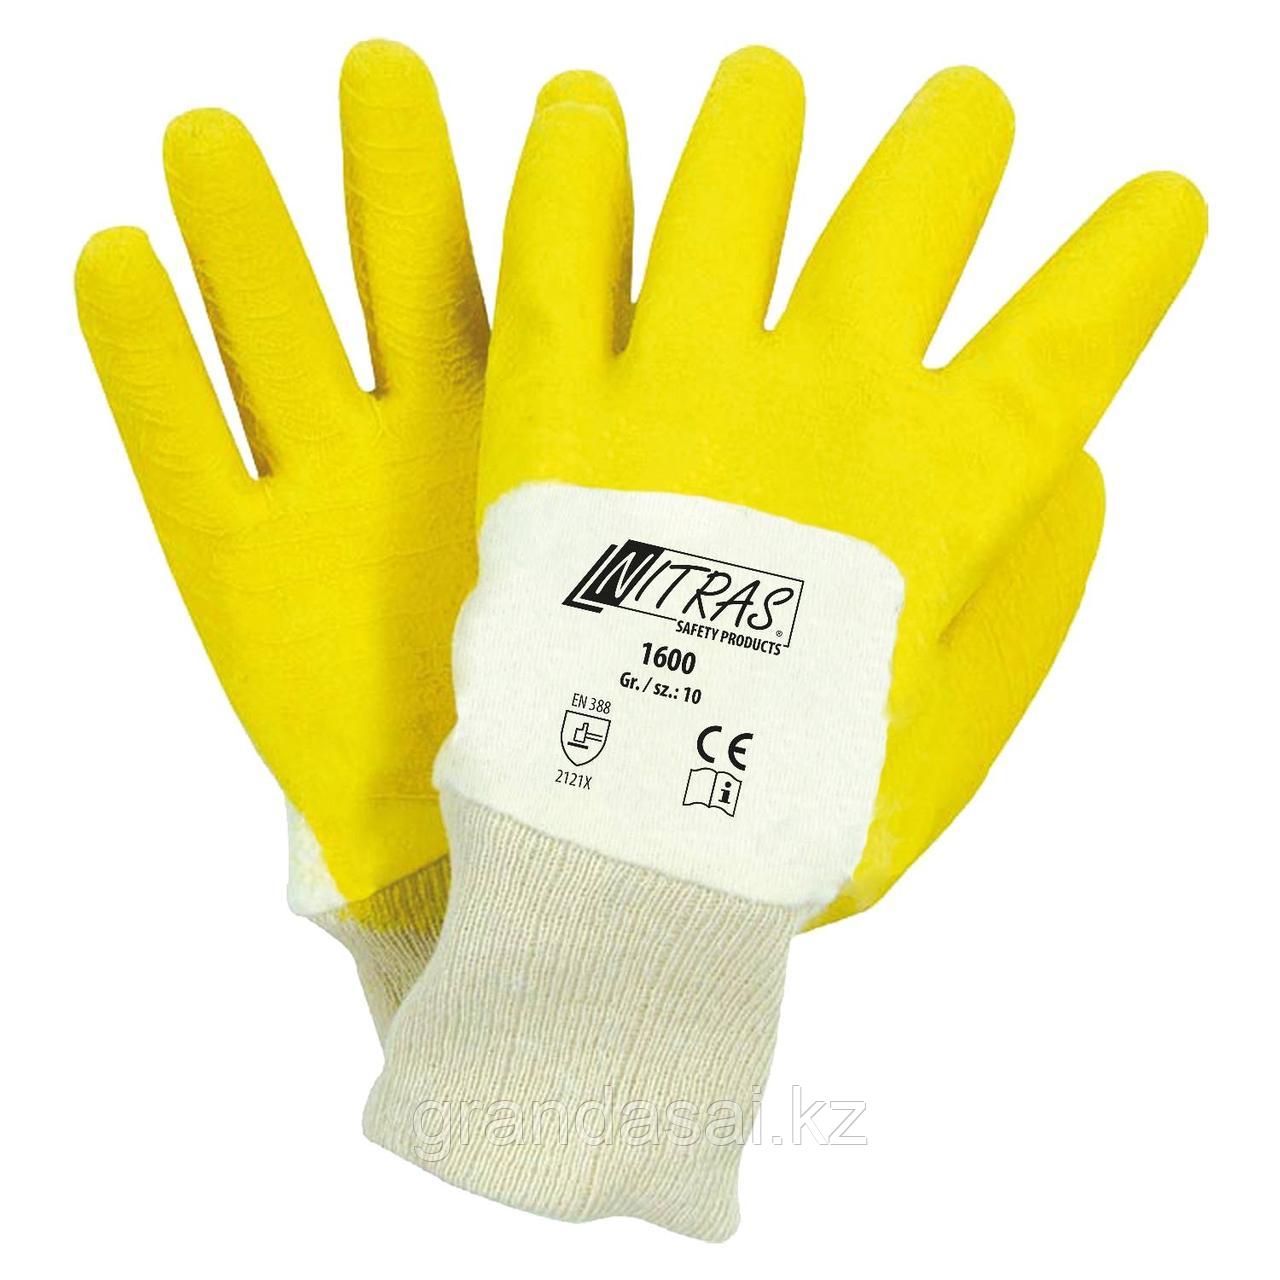 NITRAS 1600, перчатки трикотажные из хлопка натурального цвета, на ¾ облитые жёлтым латексом